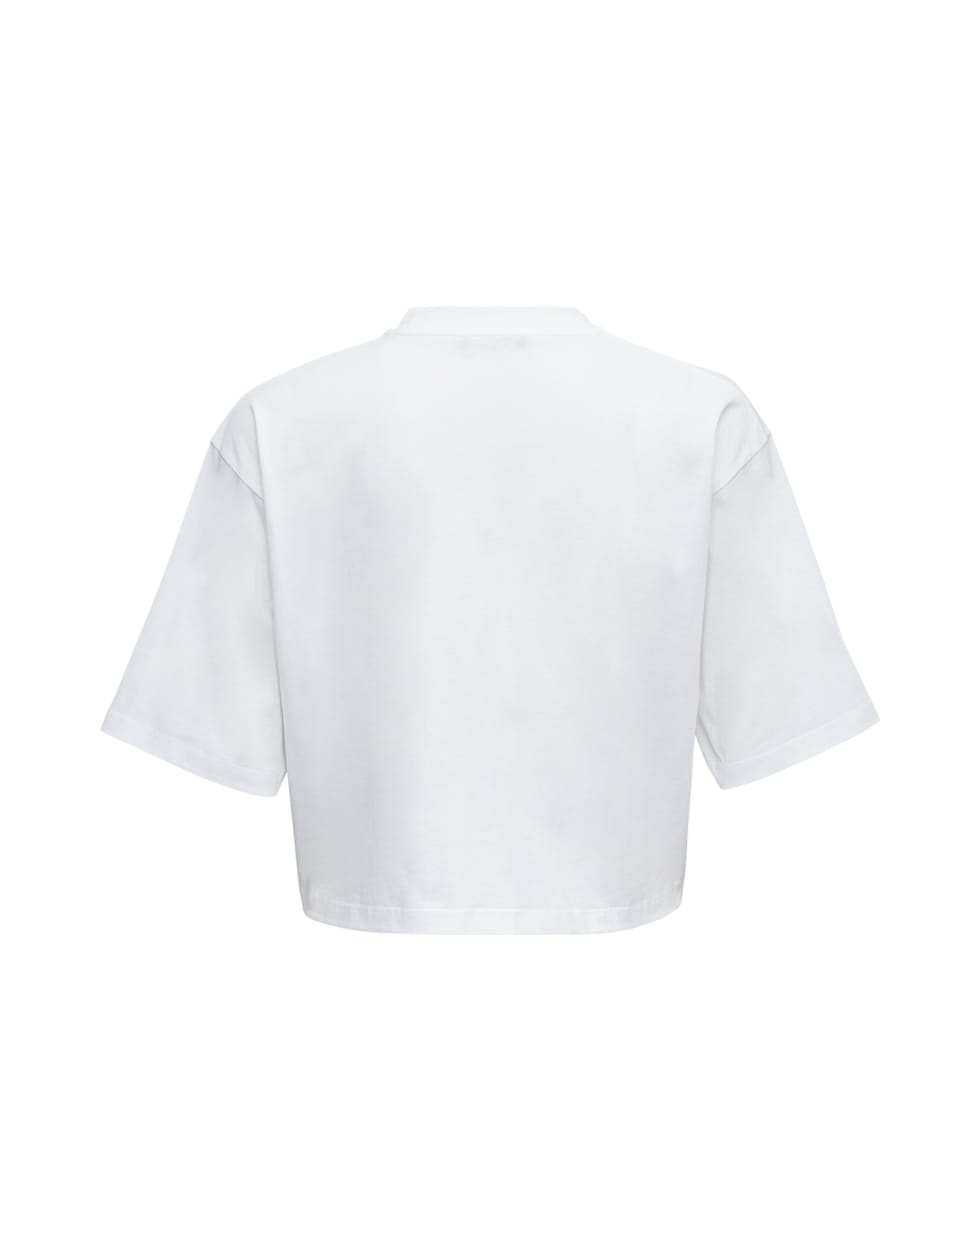 Shop Balmain Printed Cropped T-shirt In Gab Blanc Noir